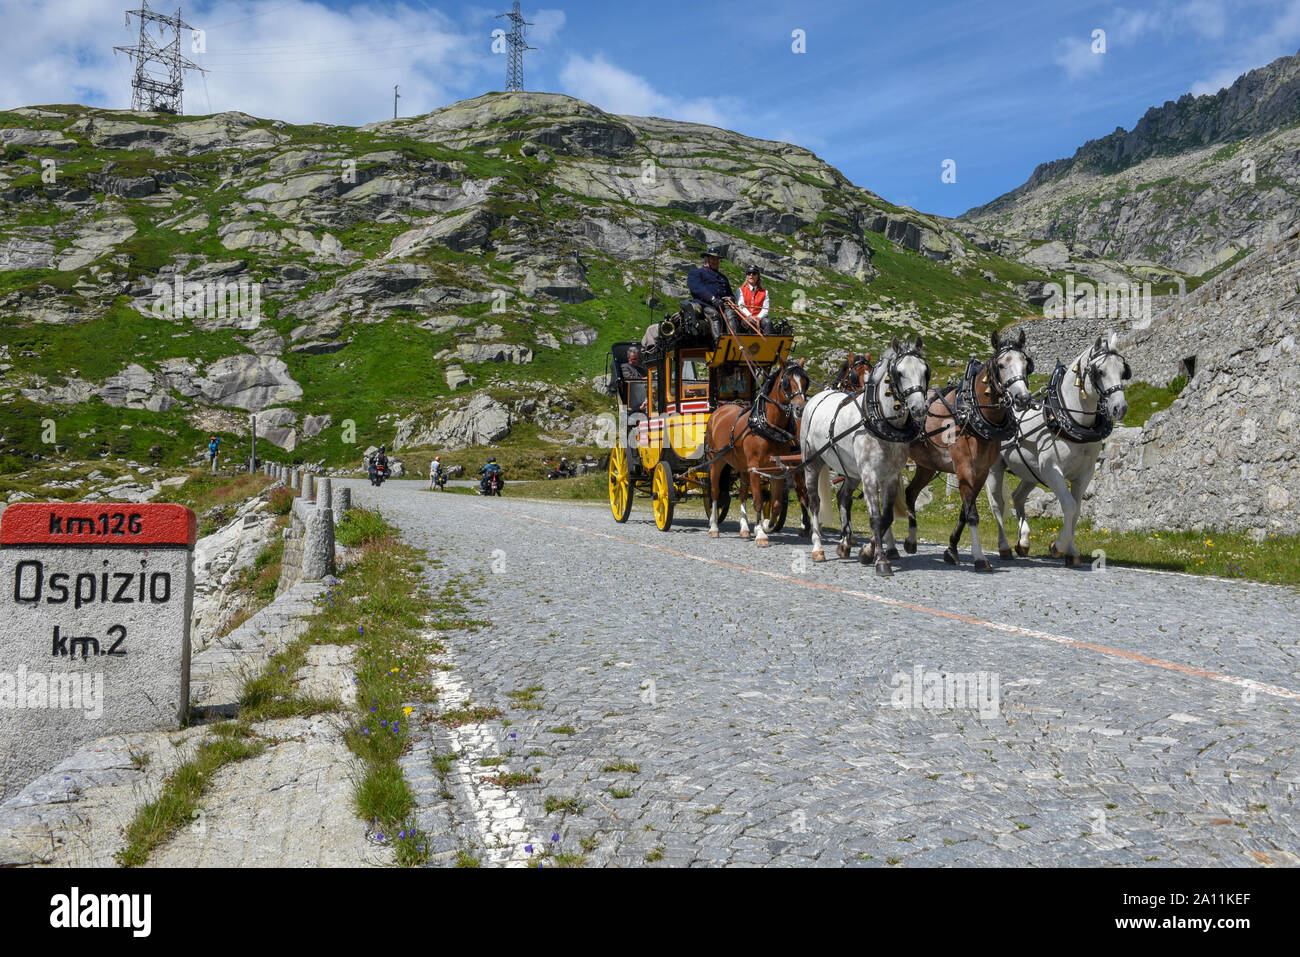 Monte San Gottardo, Svizzera - 3 August 2019: carro trainato da cavalli lungo la vecchia strada del Monte San Gottardo sulle alpi svizzere Foto Stock